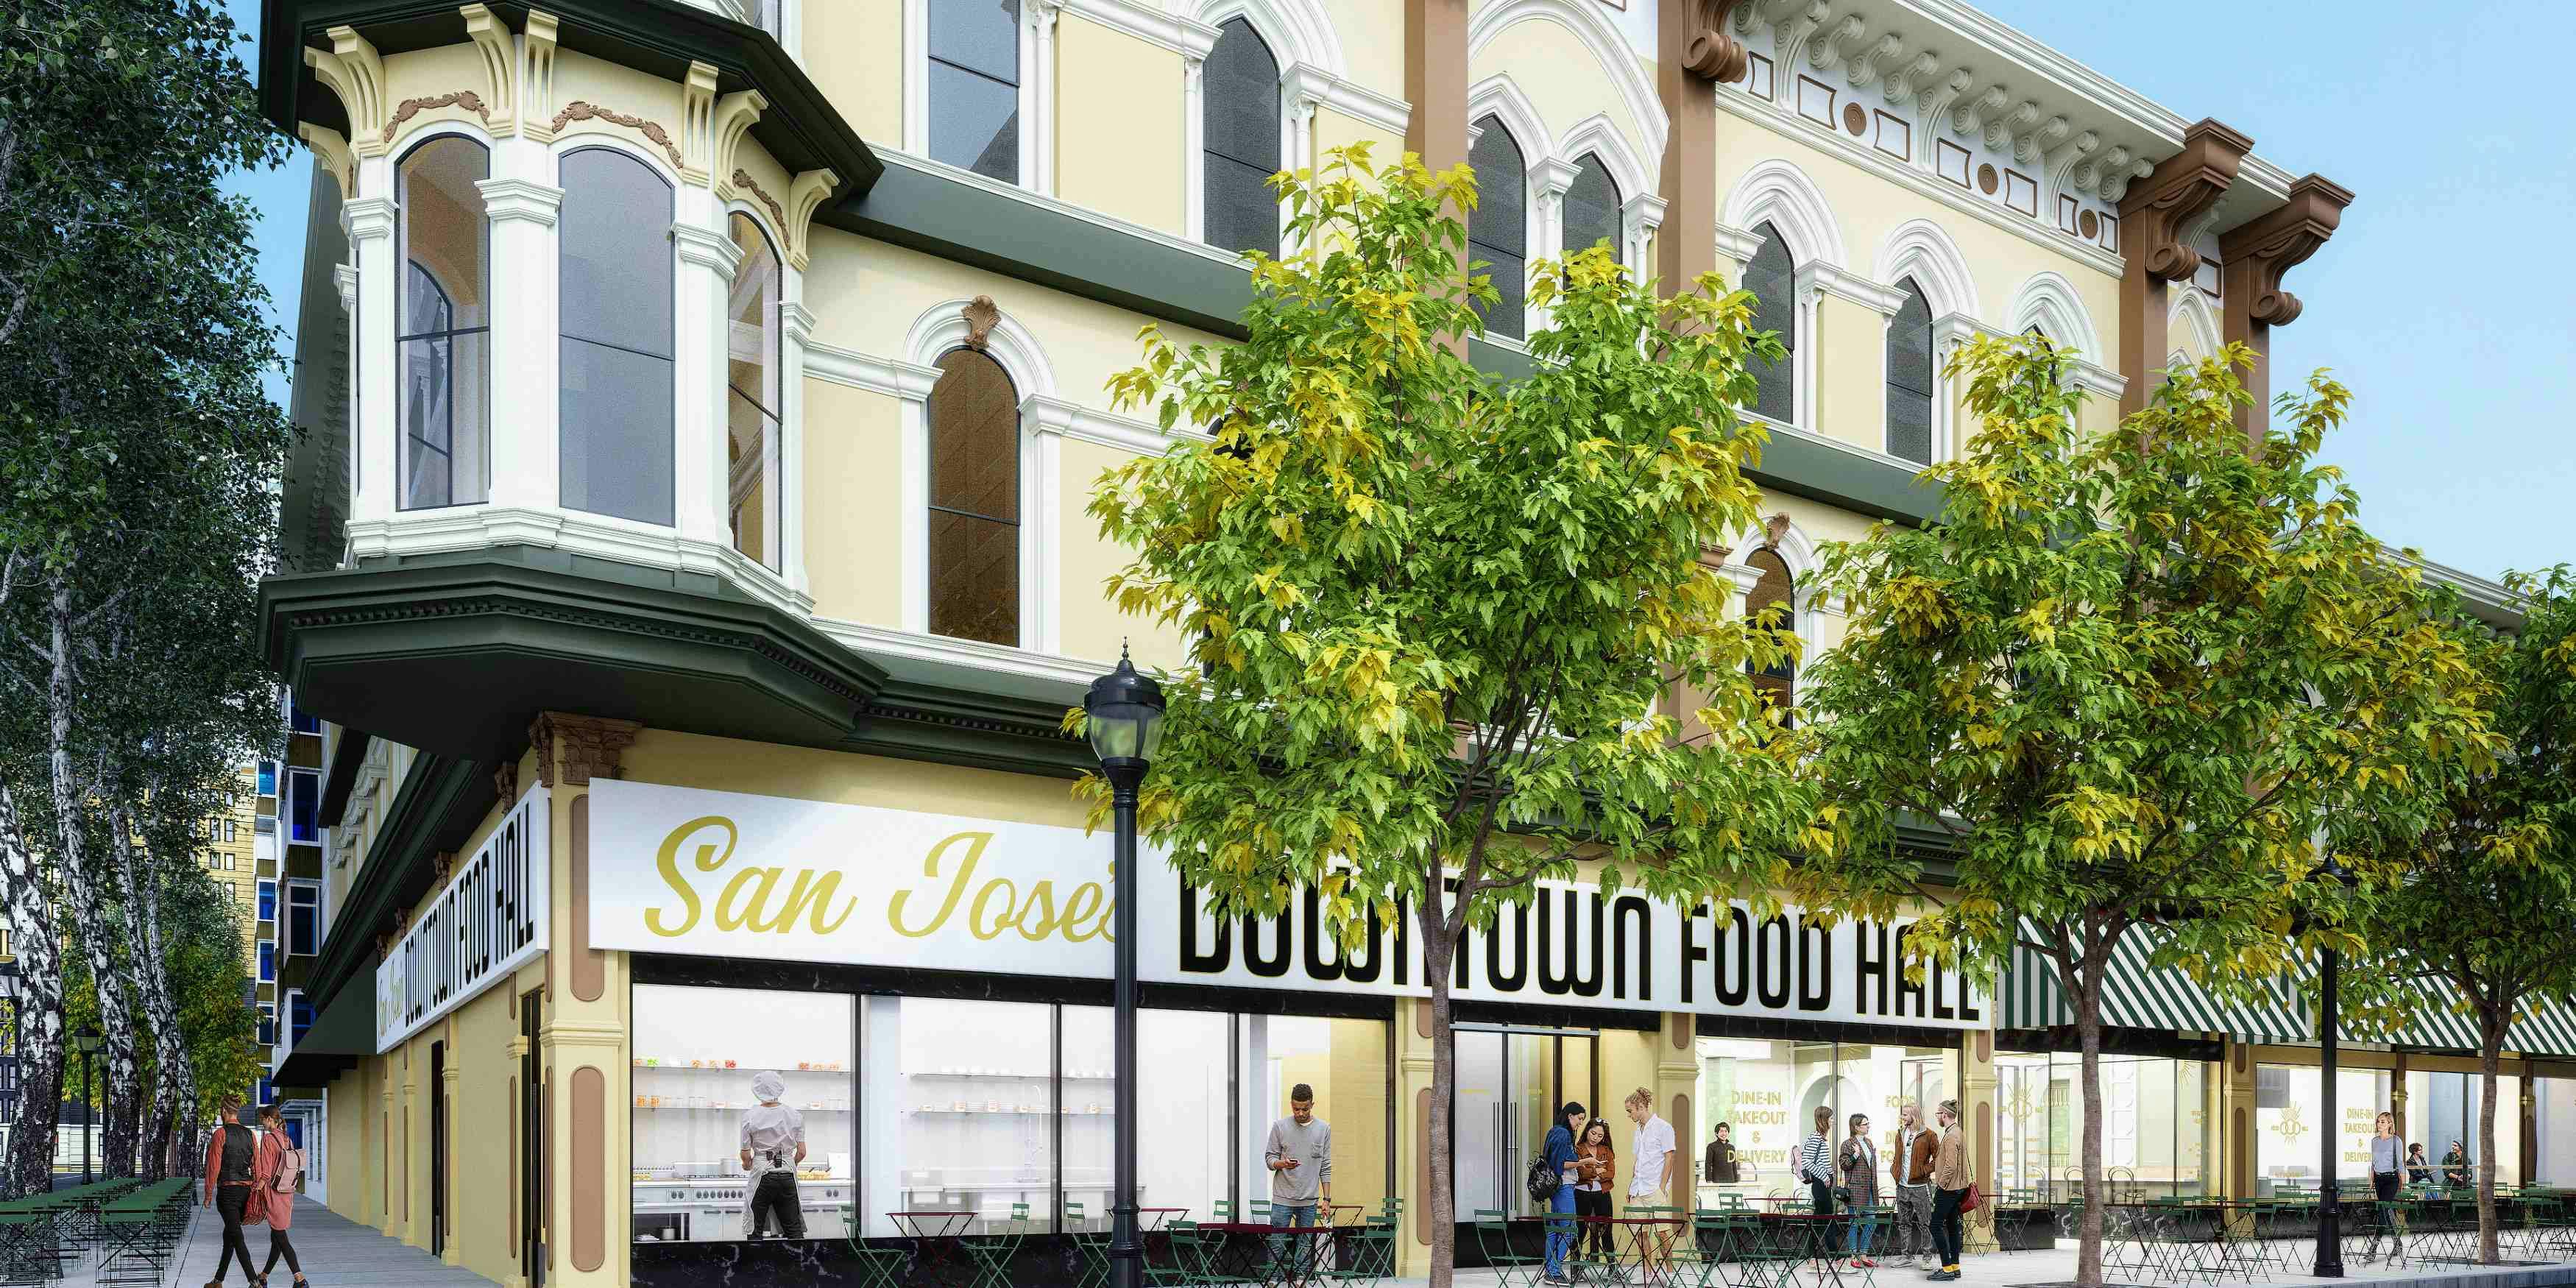 San Jose's Downtown Food Hall facility image